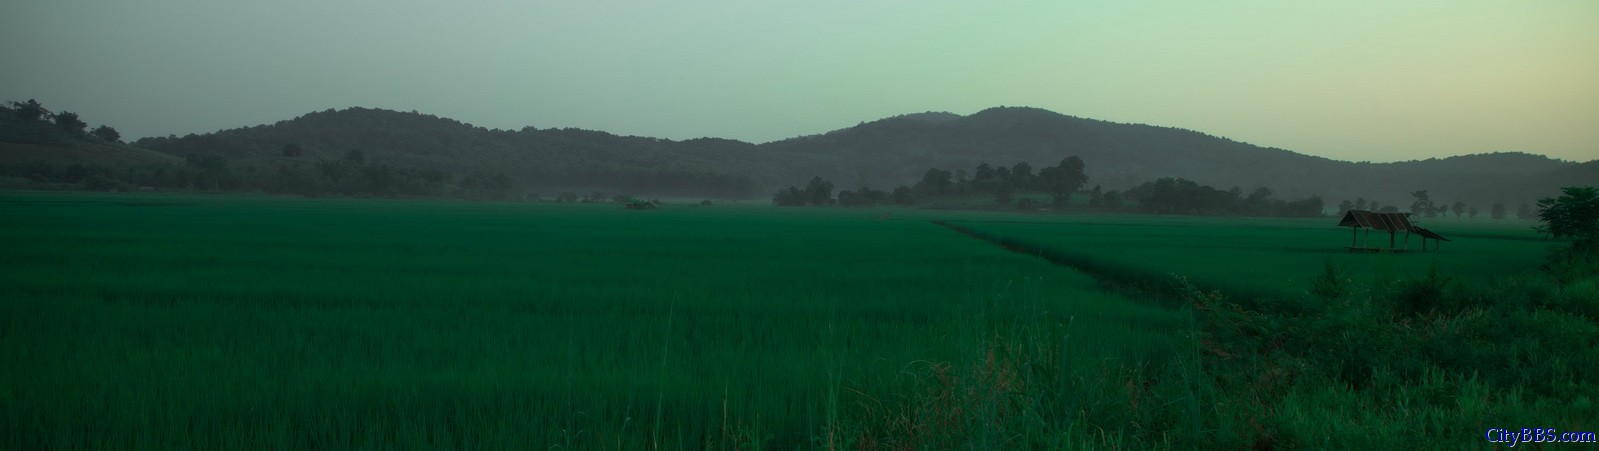 出金三角往回时，已是傍晚，绿绿的稻田上泛起阵阵薄雾，朦胧之中仿佛进入了人间仙境。 ...